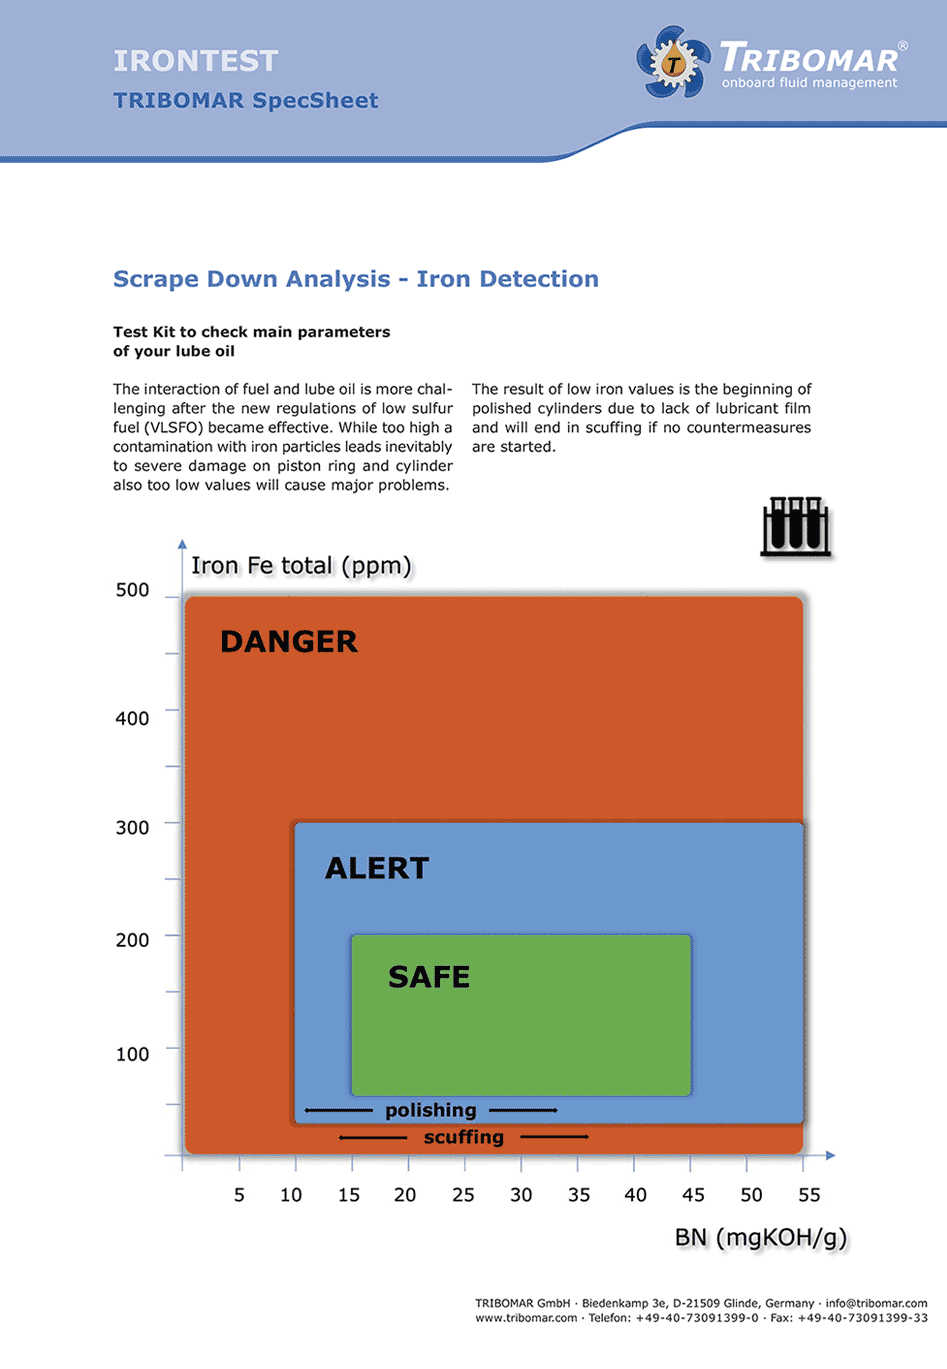 Scrape Down Analysis Iron Detection